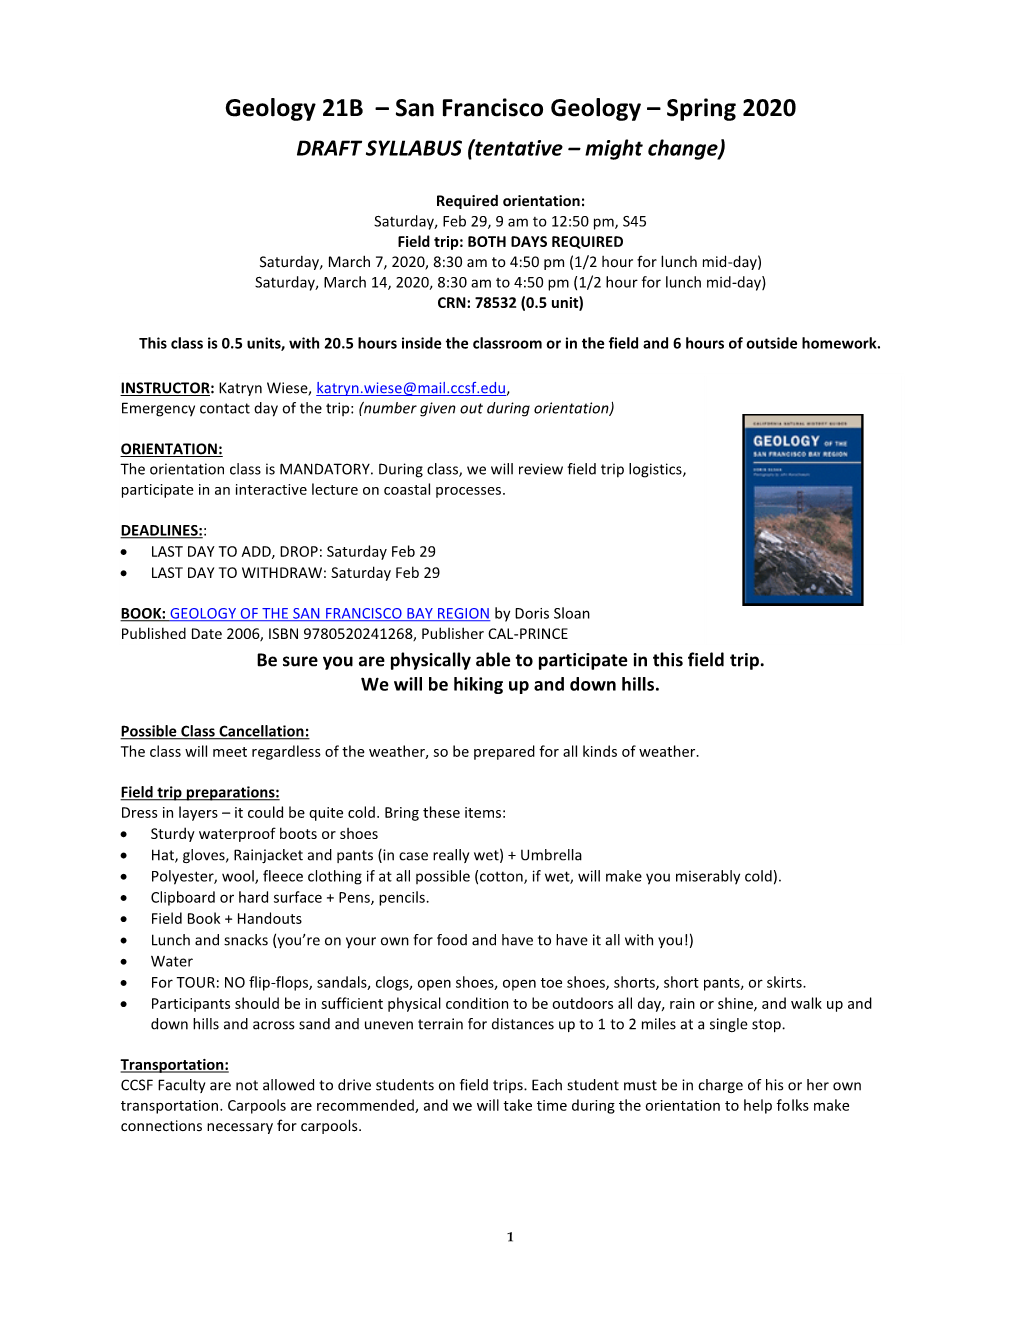 Geology 21B – San Francisco Geology – Spring 2020 DRAFT SYLLABUS (Tentative – Might Change)